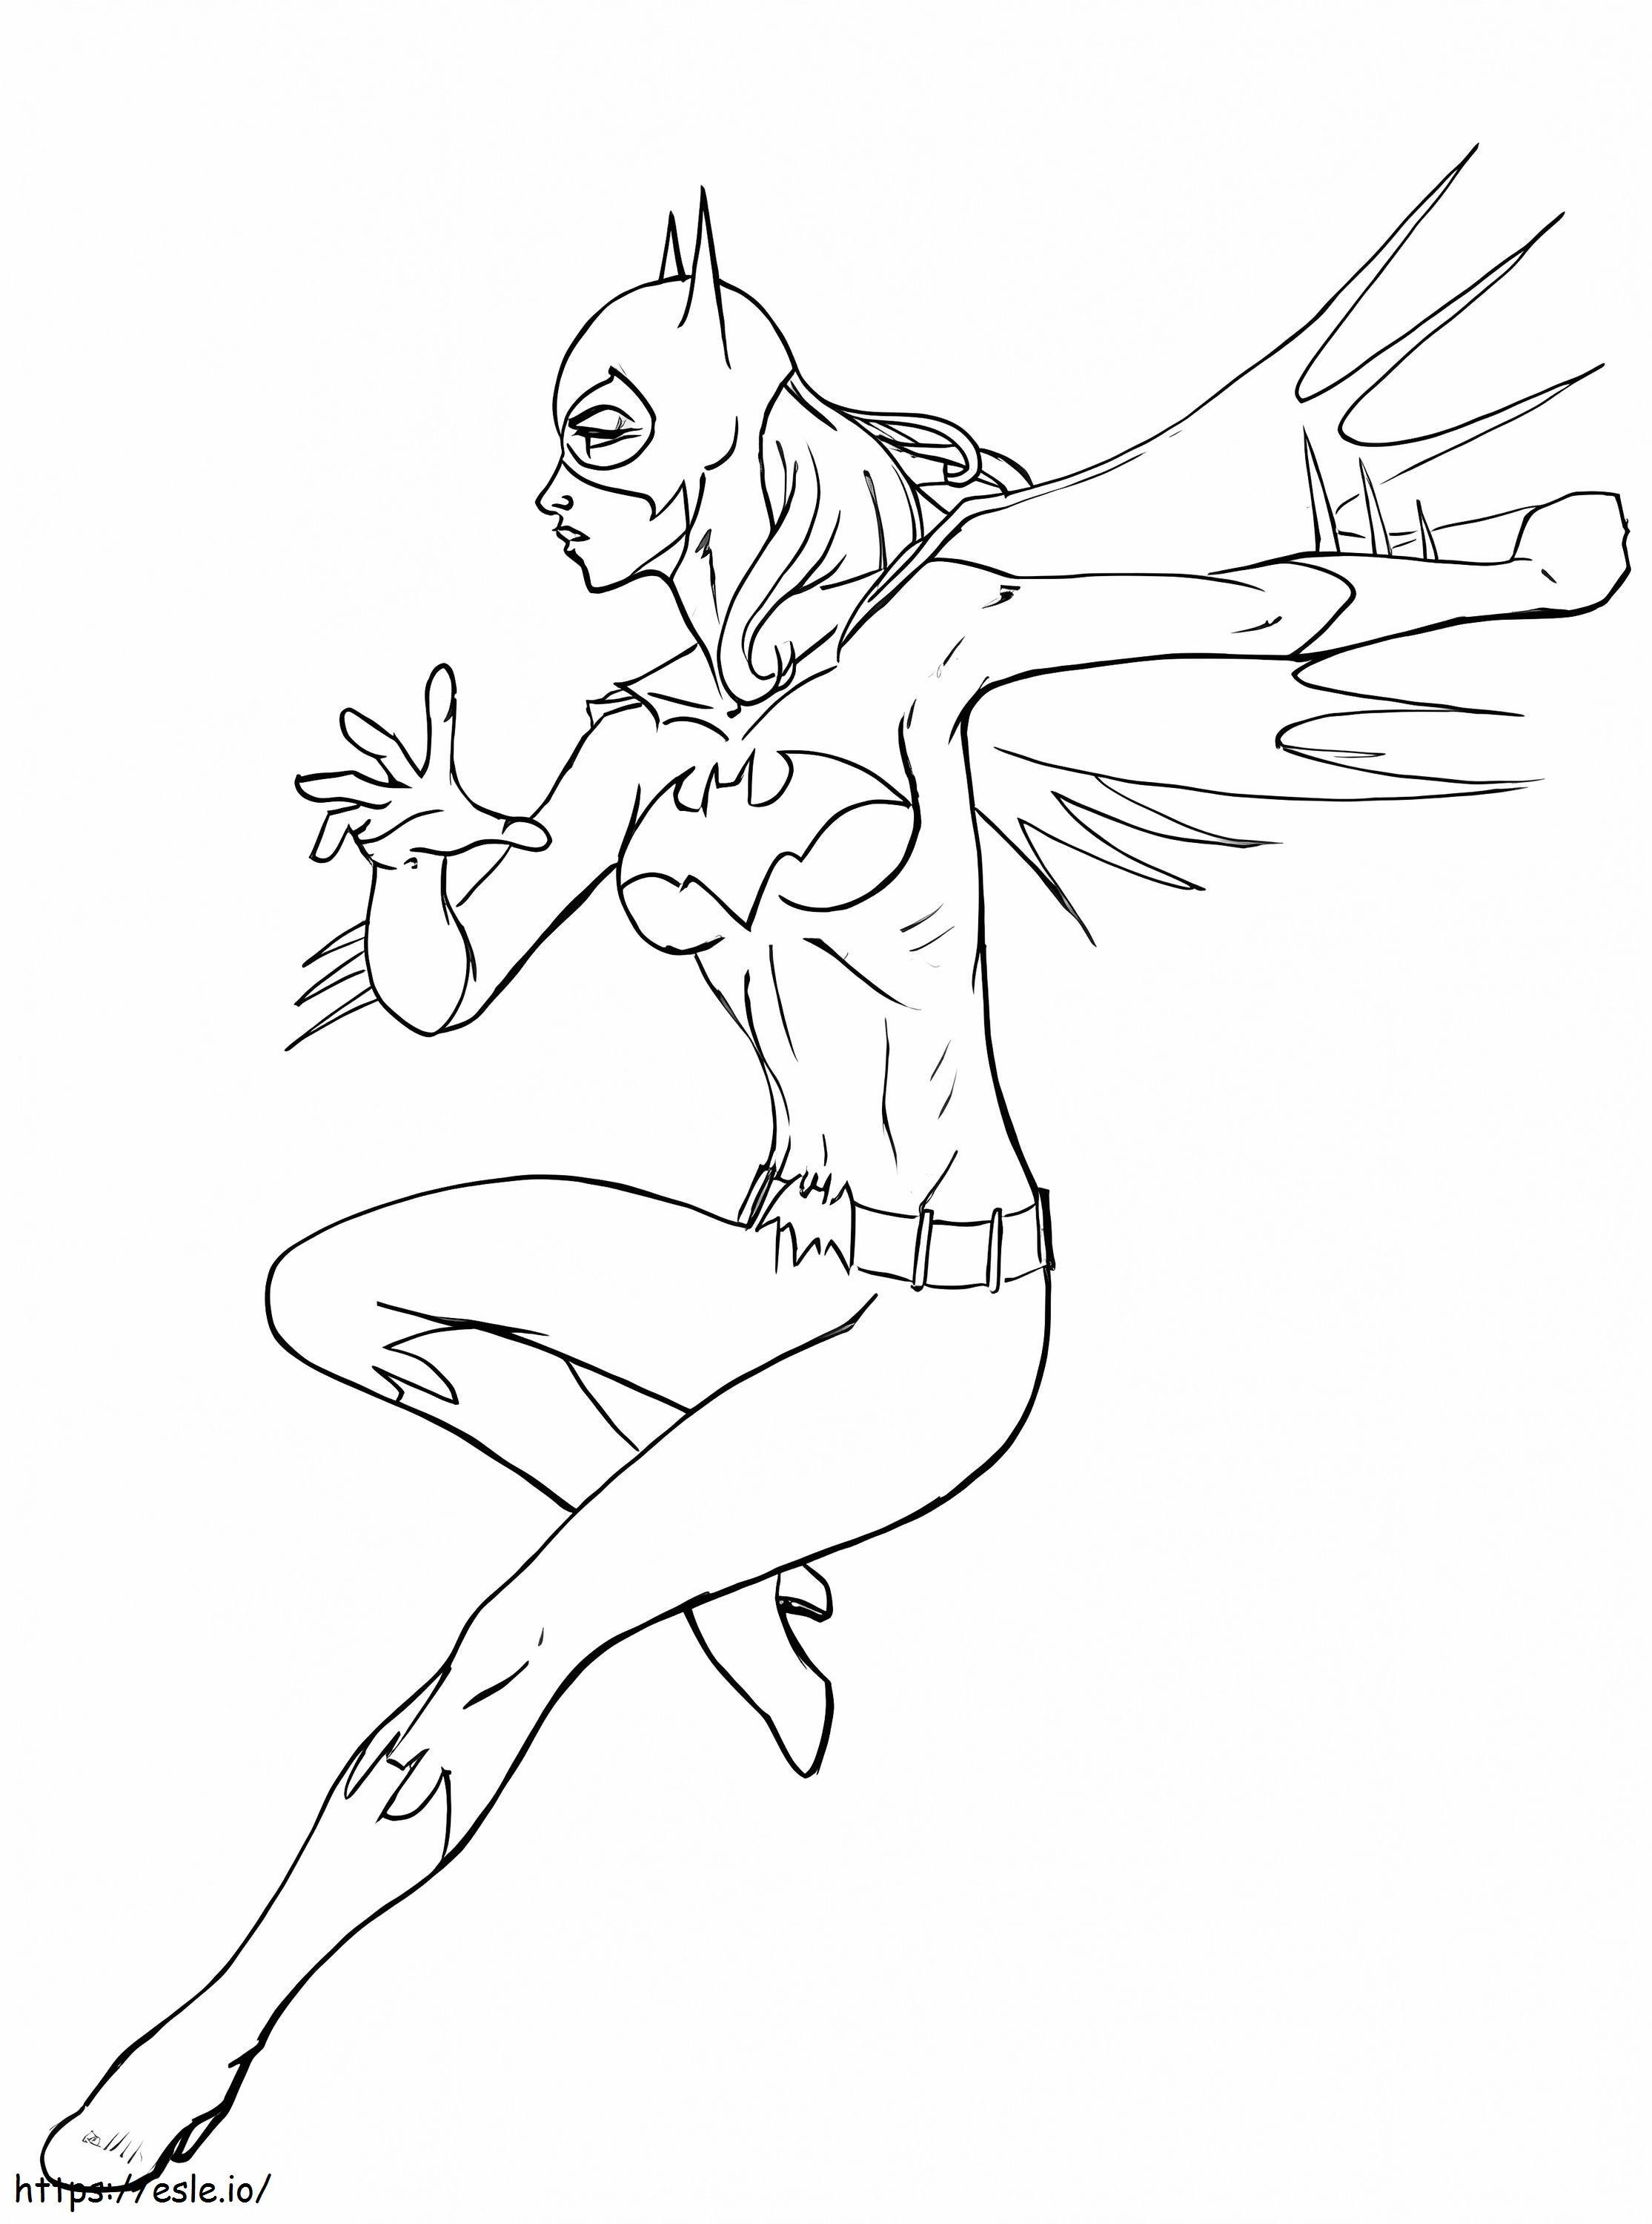 Coloriage Combat de Batgirl à imprimer dessin